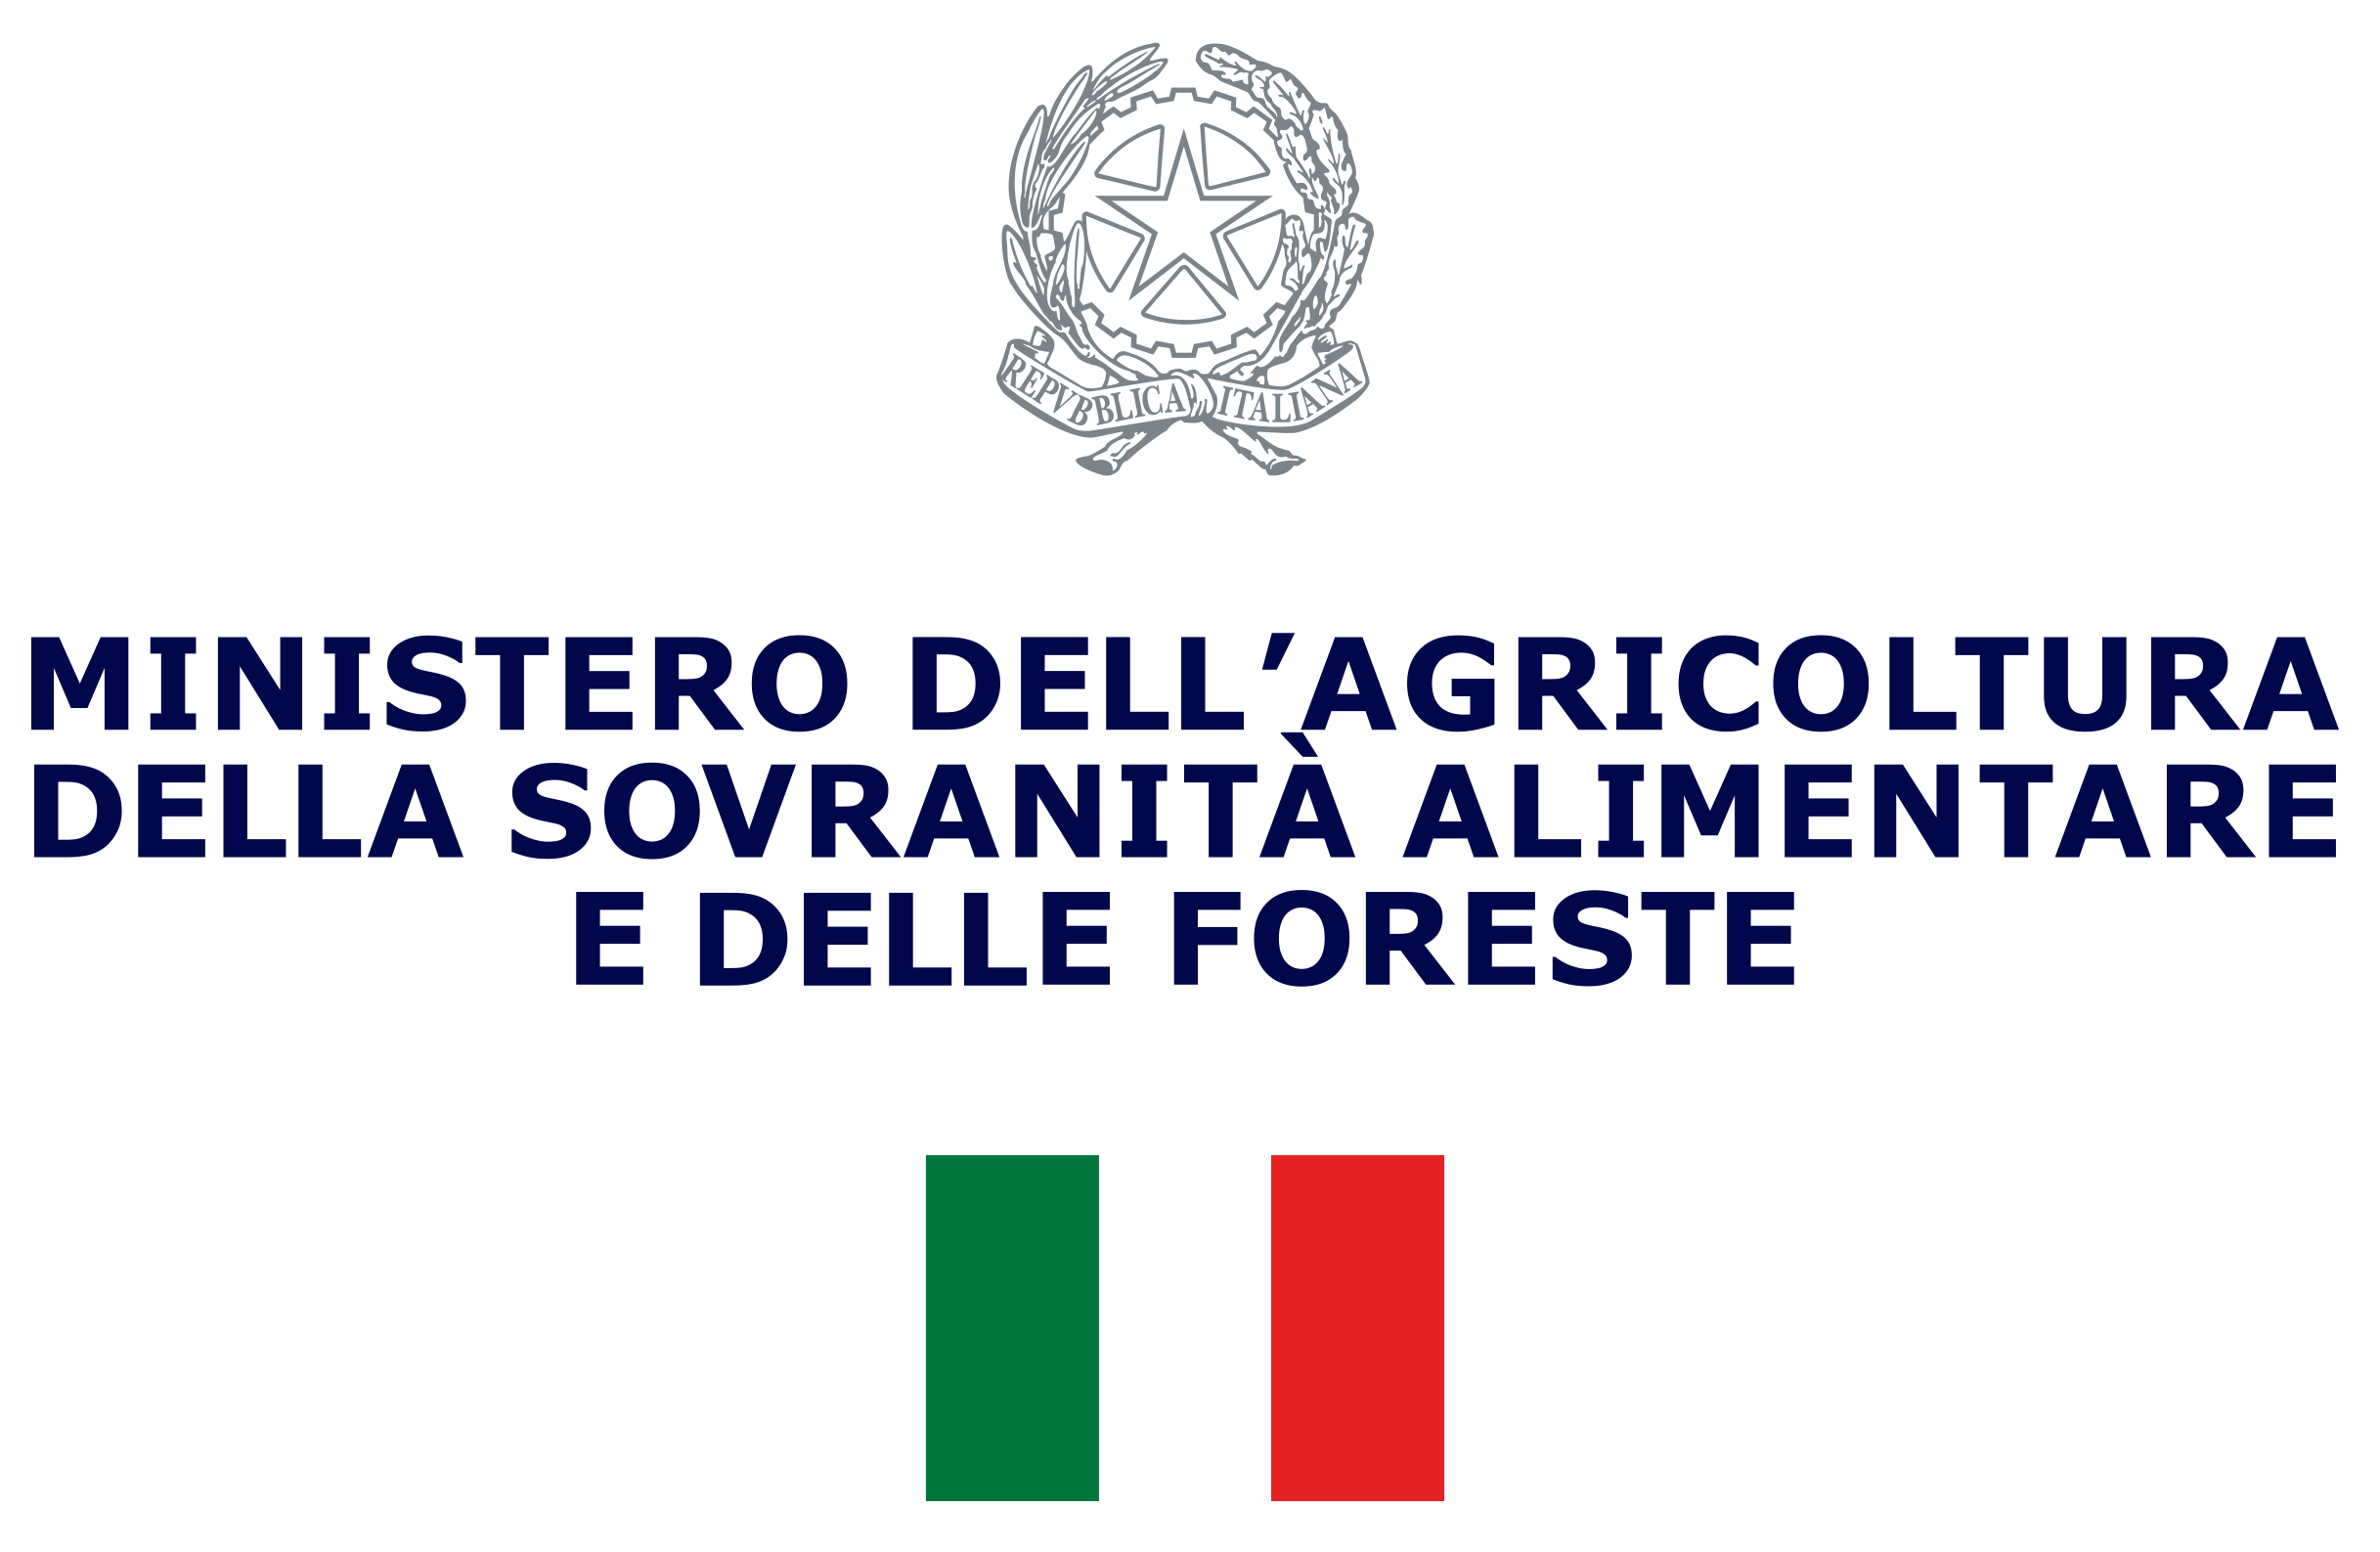 Ministero dell'agricoltura, della sovranit alimentare e delle foreste